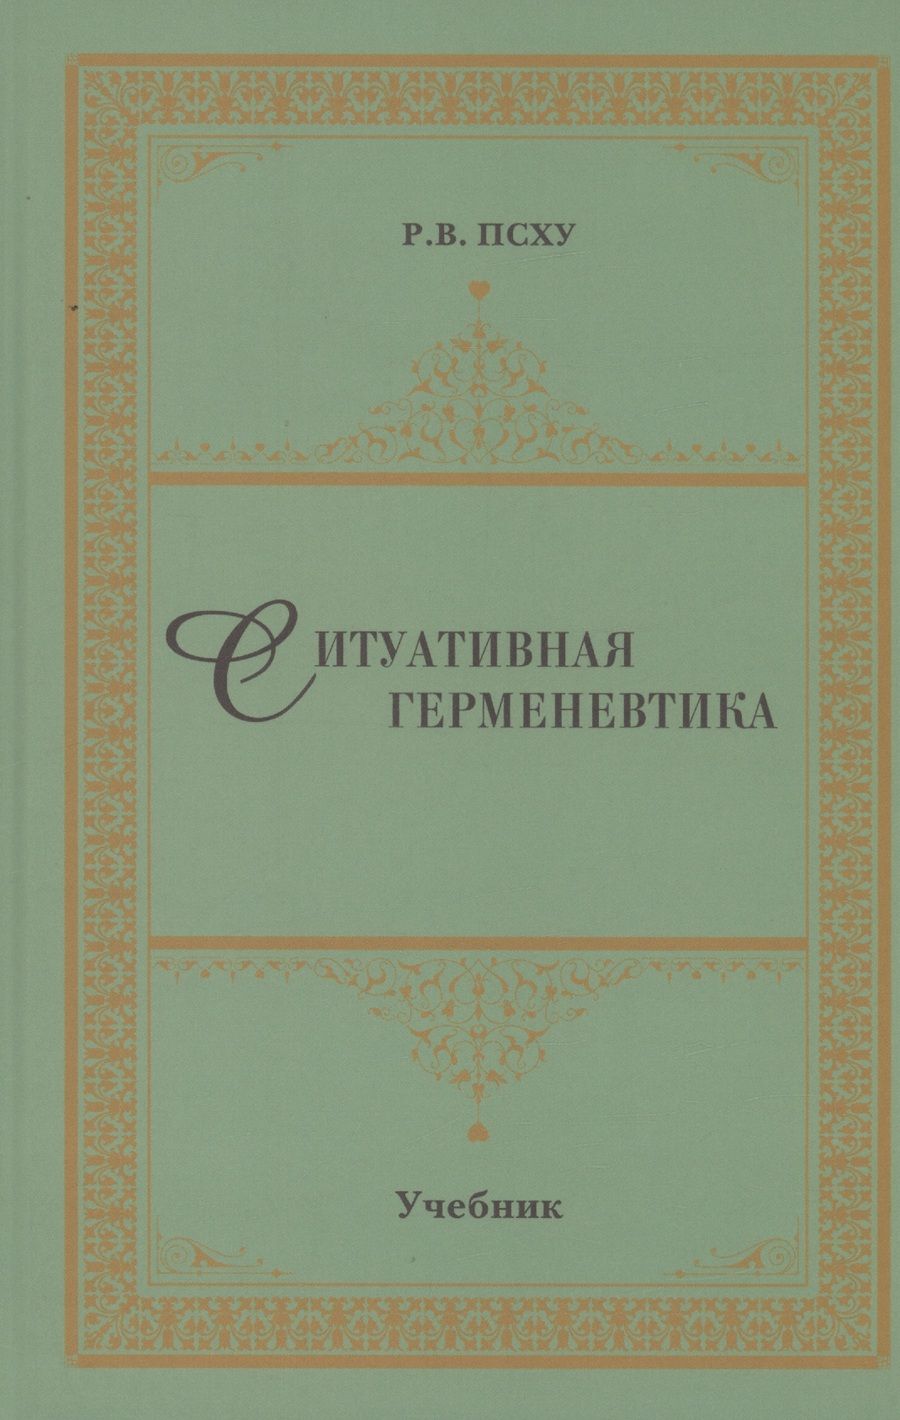 Обложка книги "Псху: Ситуативная герменевтика как метод философской текстологии. Учебник"